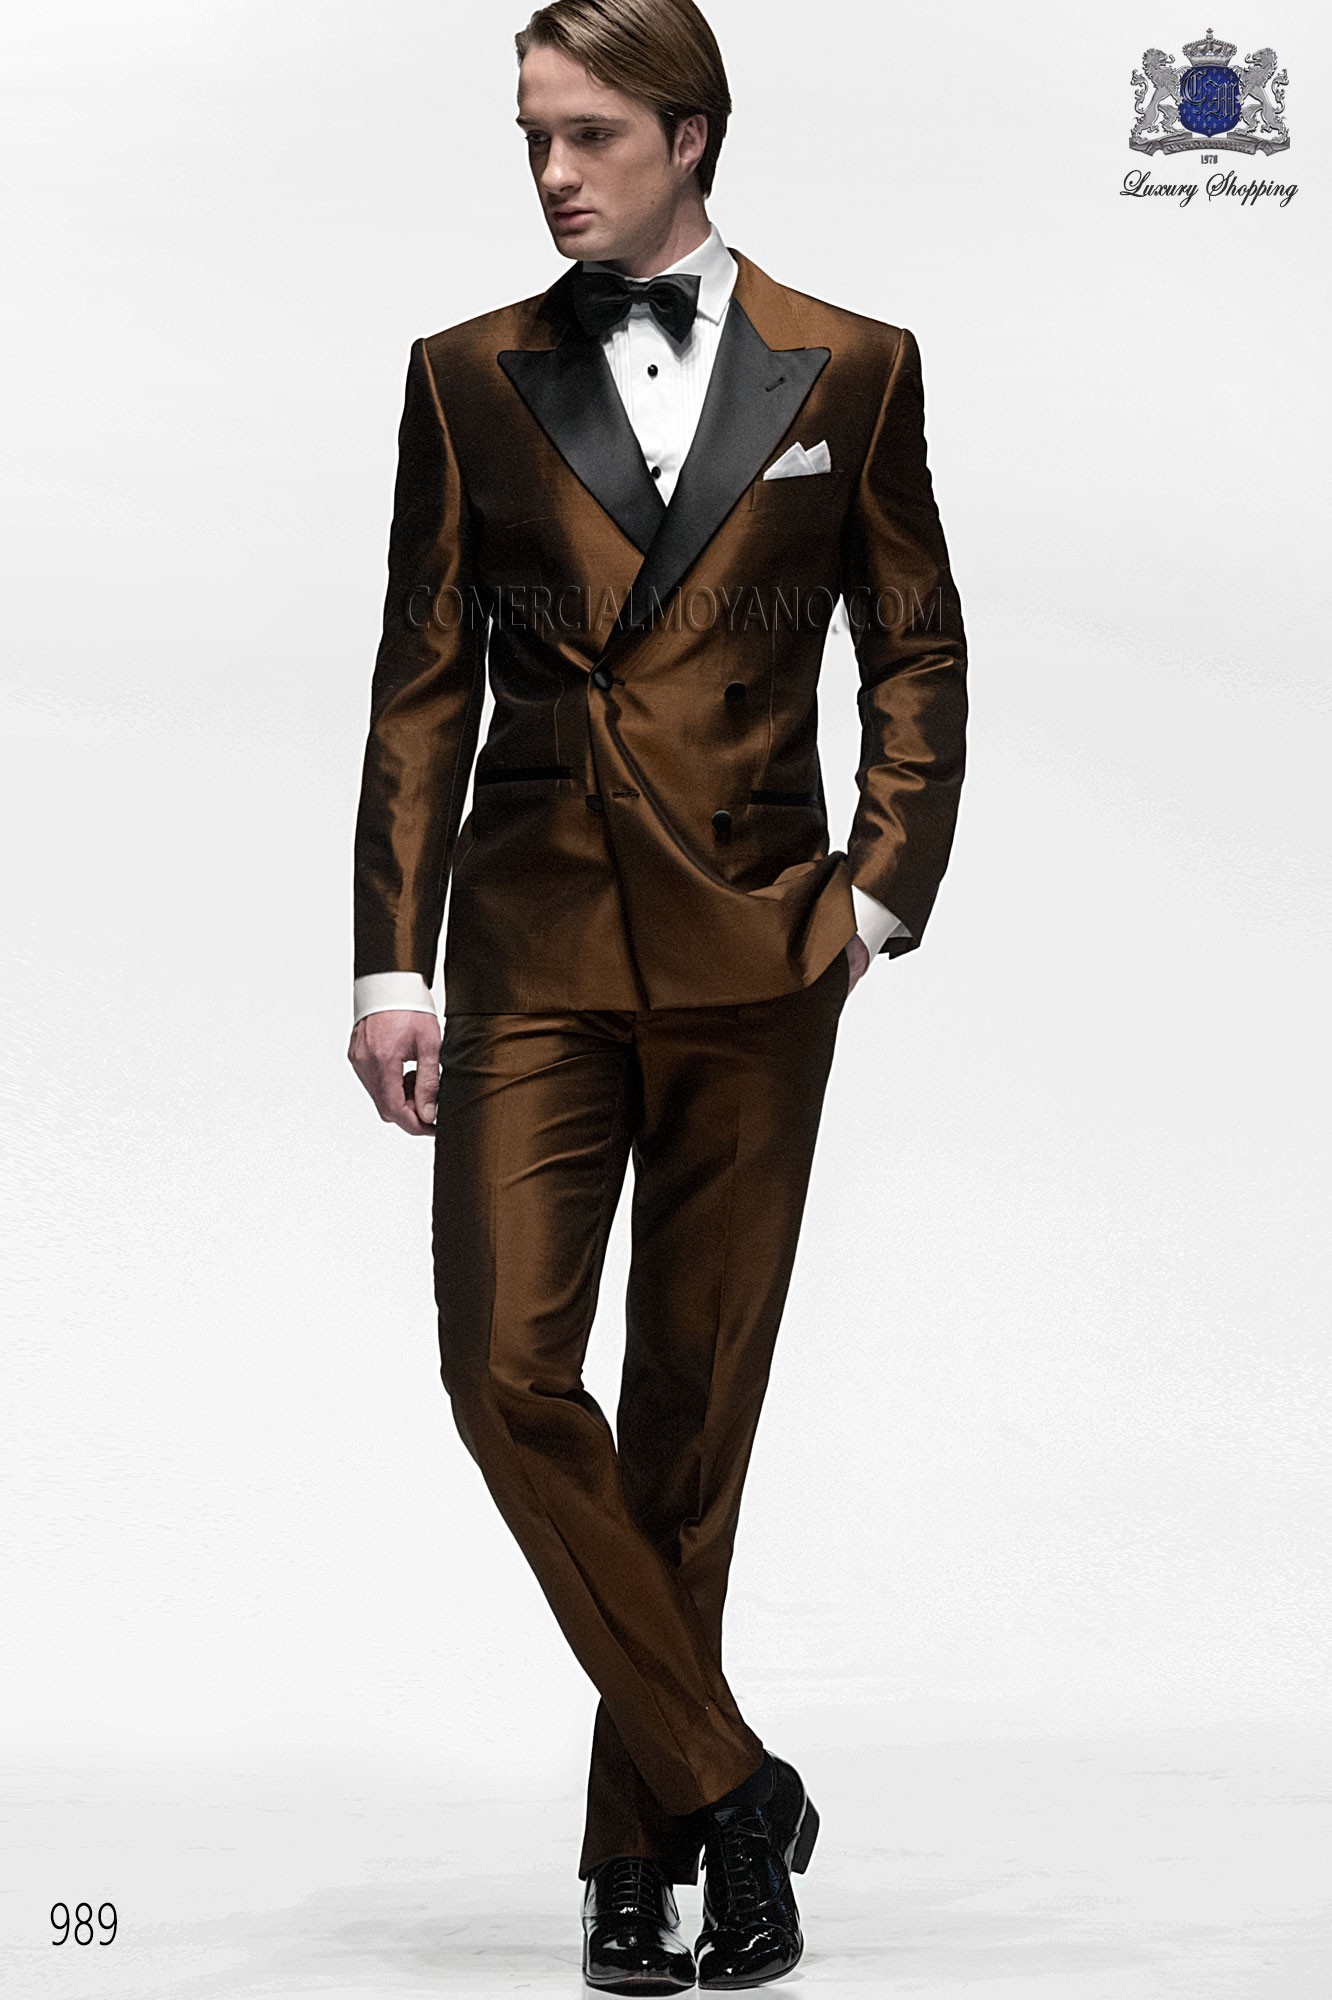 Black Tie brown men wedding suit, model: 989 Ottavio Nuccio Gala